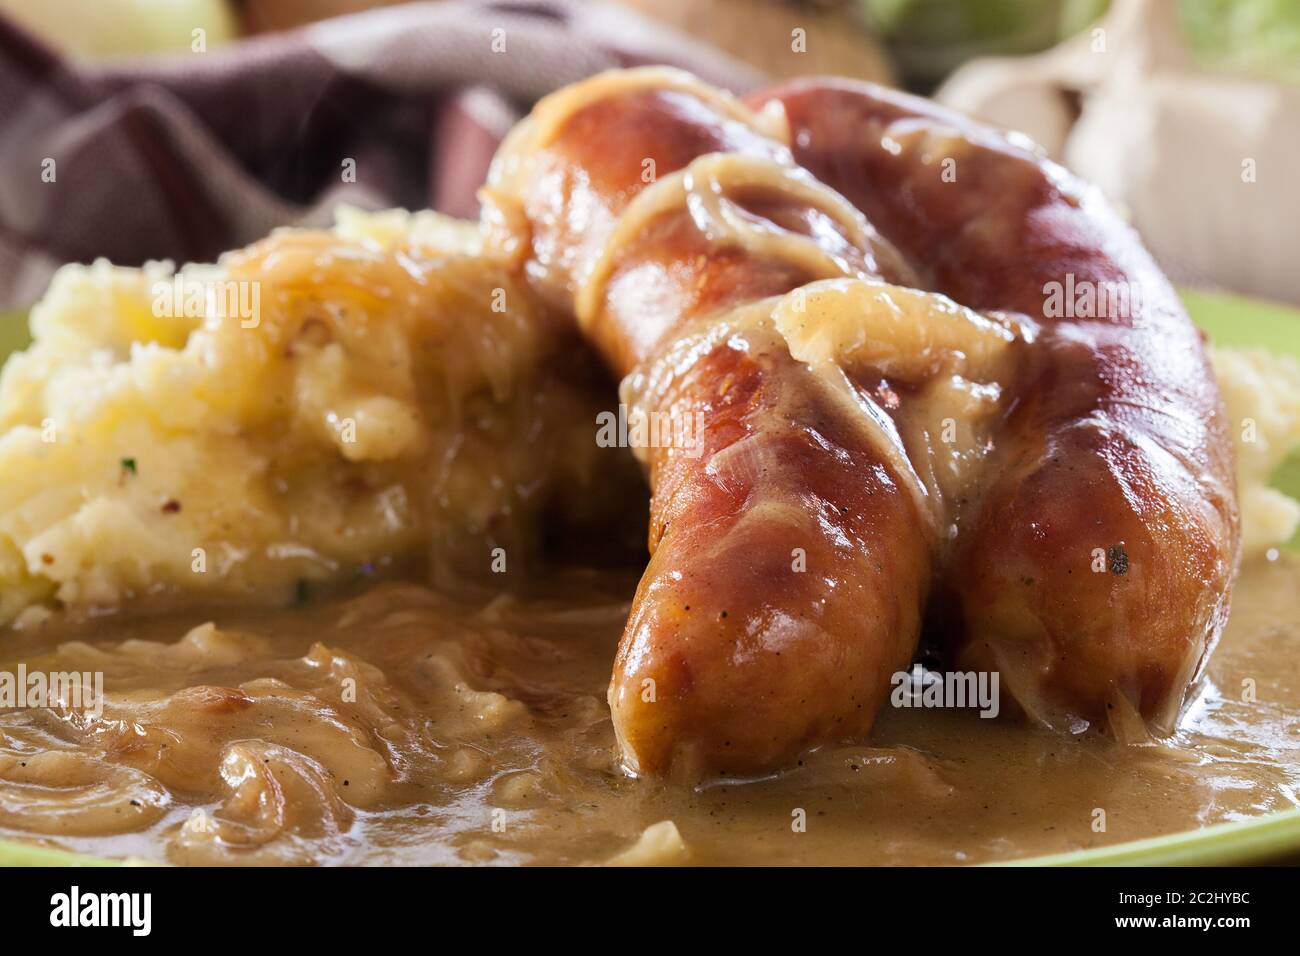 Würstchen mit Kartoffelbrei. Gebackene Wurst im Onion gravy mit Kartoffelpüree serviert. Stockfoto